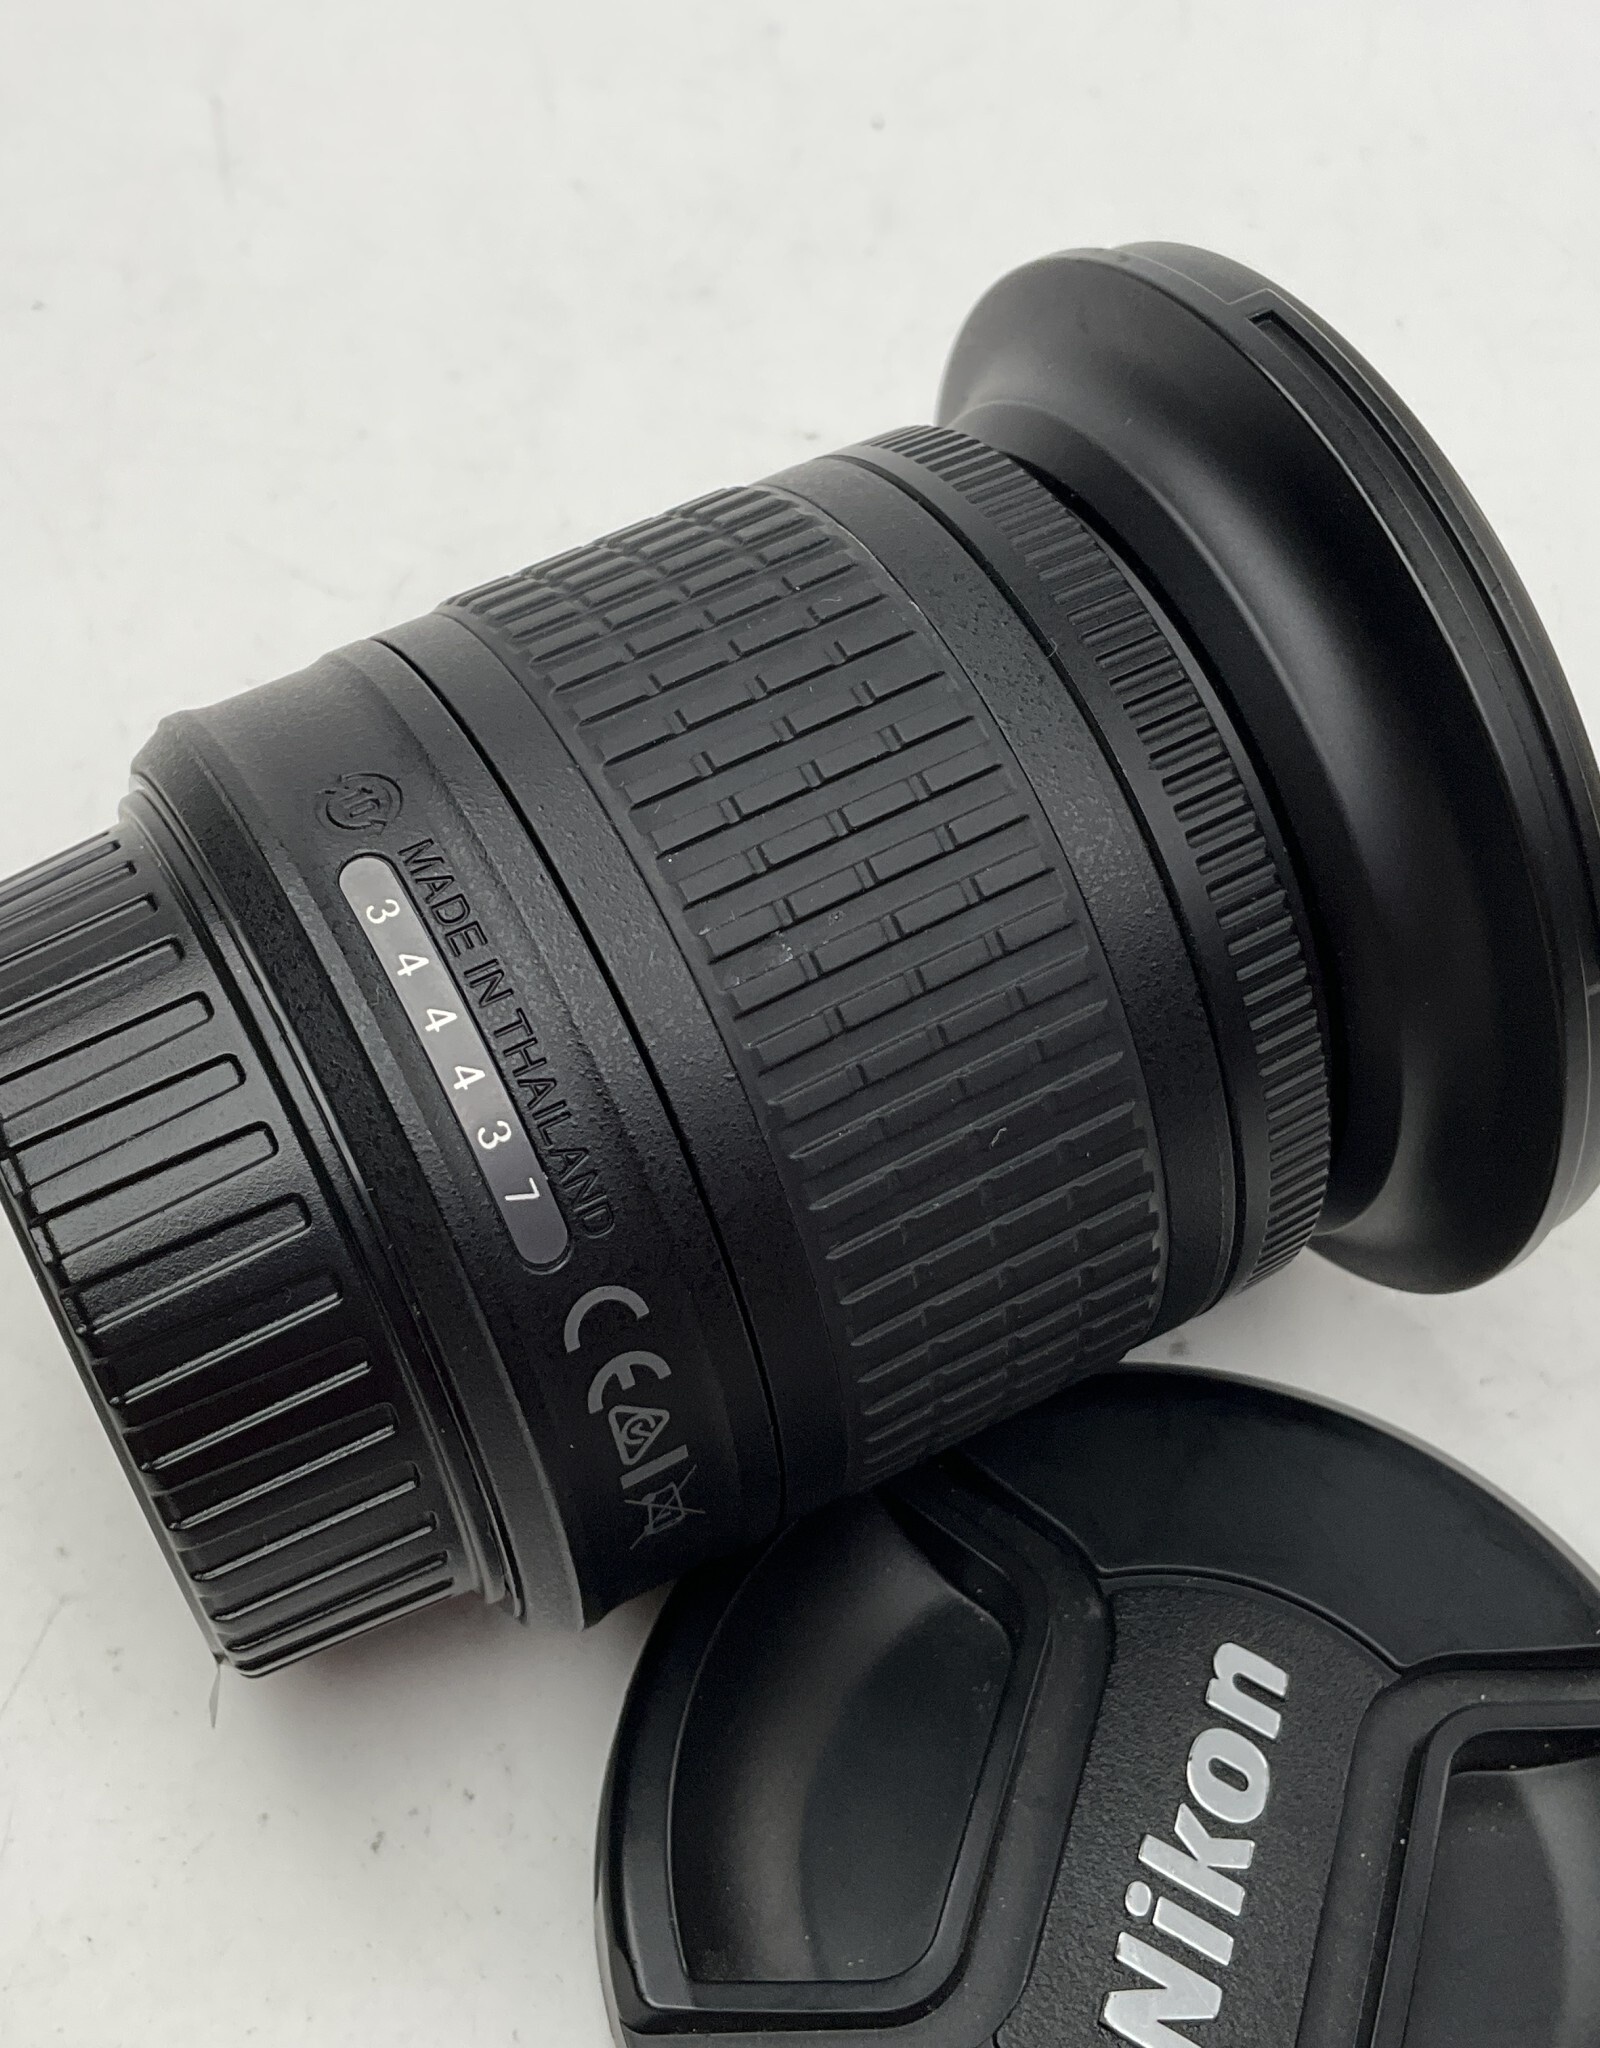 NIKON Nikon AF-P Nikkor 10-20mm f4.5-5.6 G VR Lens Used Good